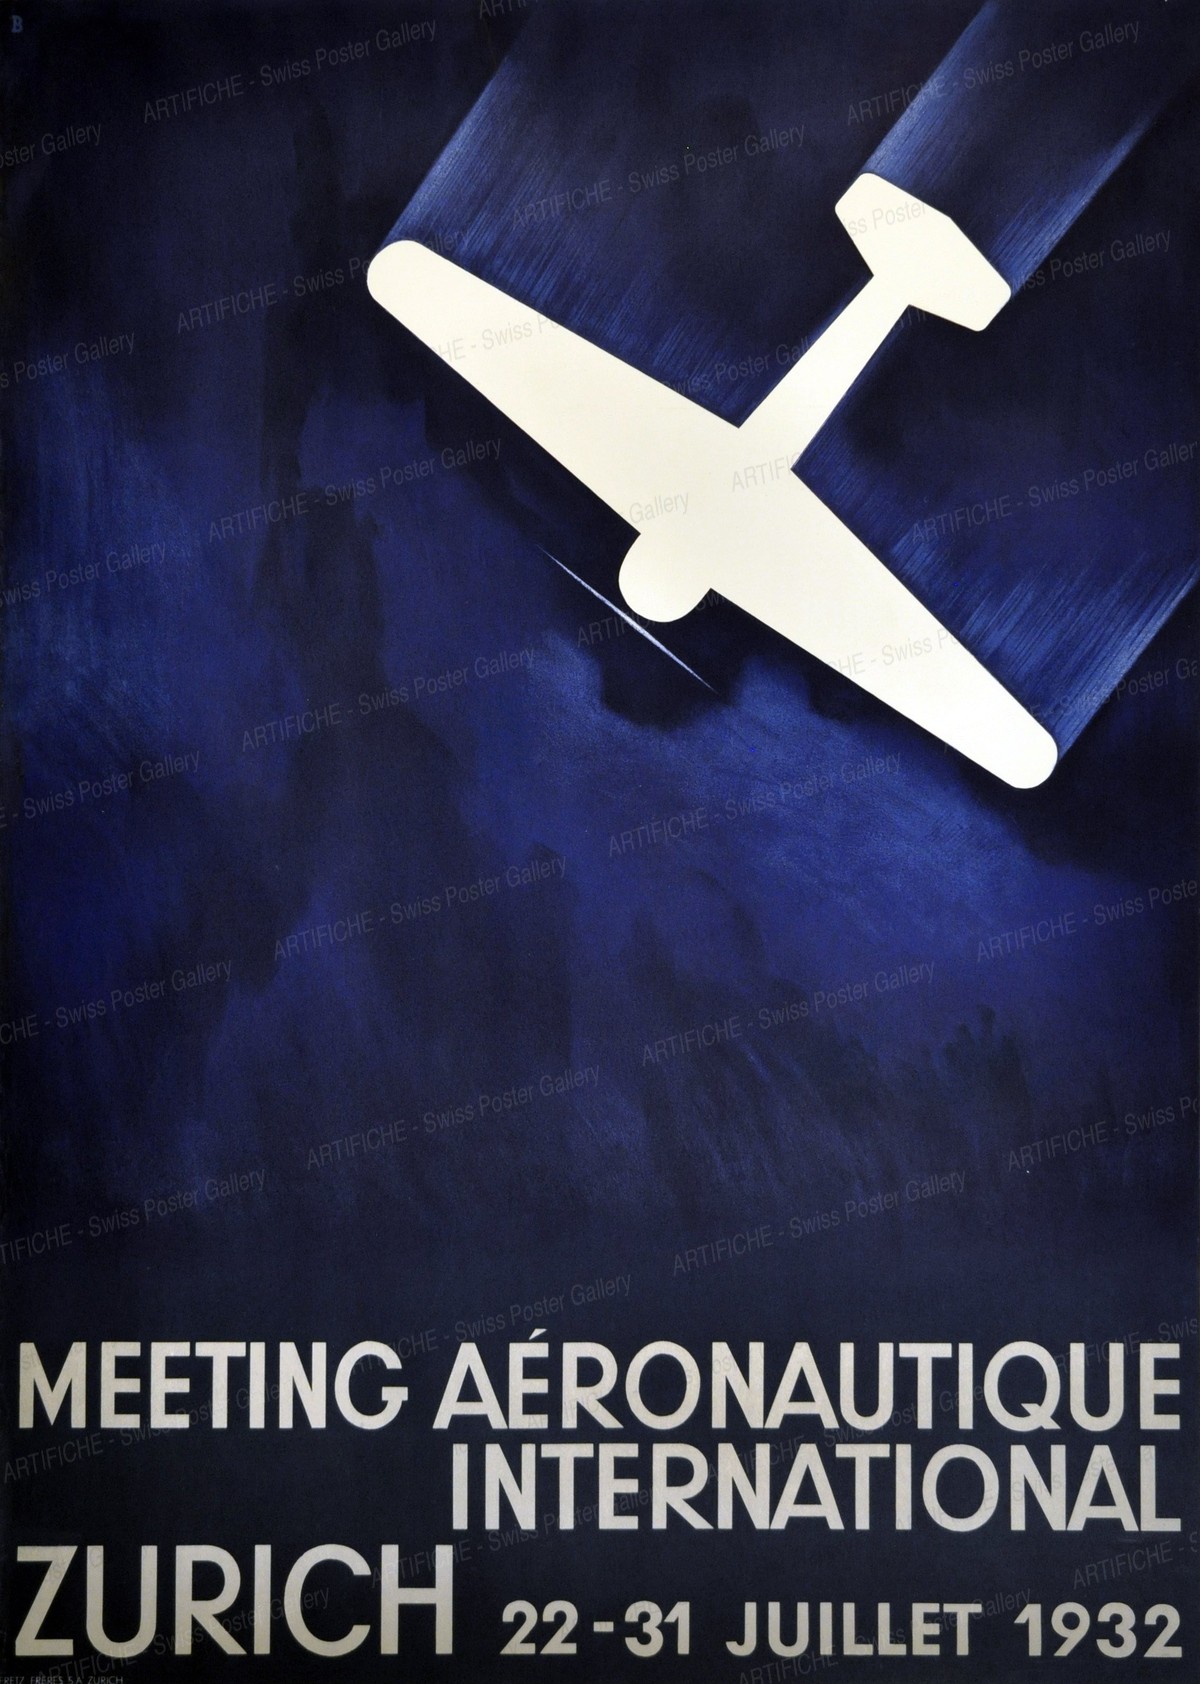 Zurich International Aero Meeting 1932, Otto Baumberger